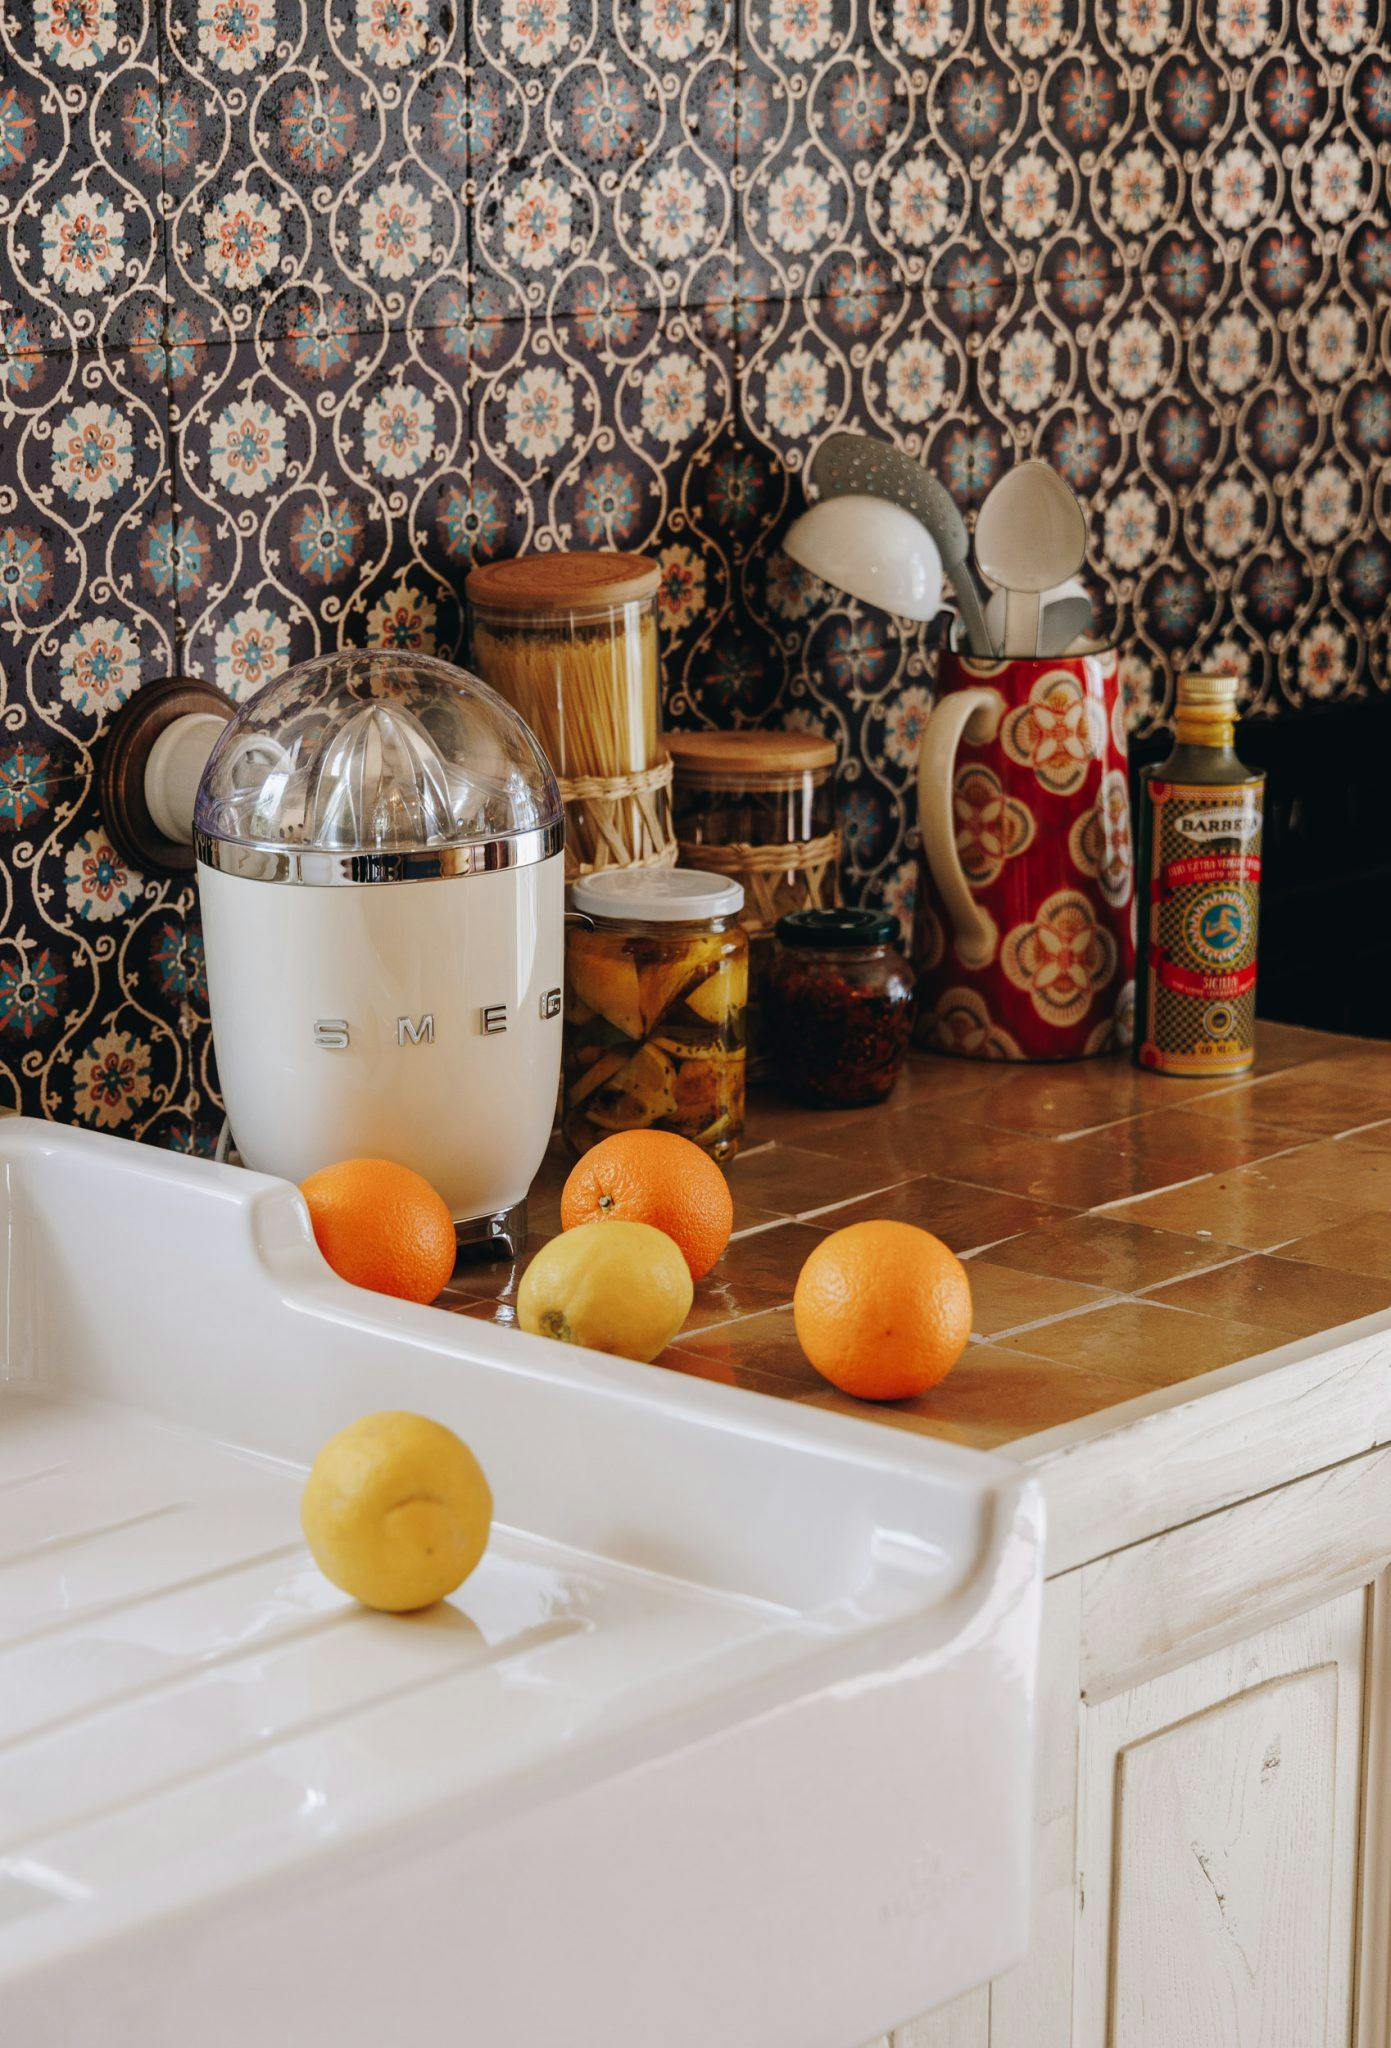 kitchen details: fruit and smeg juicer